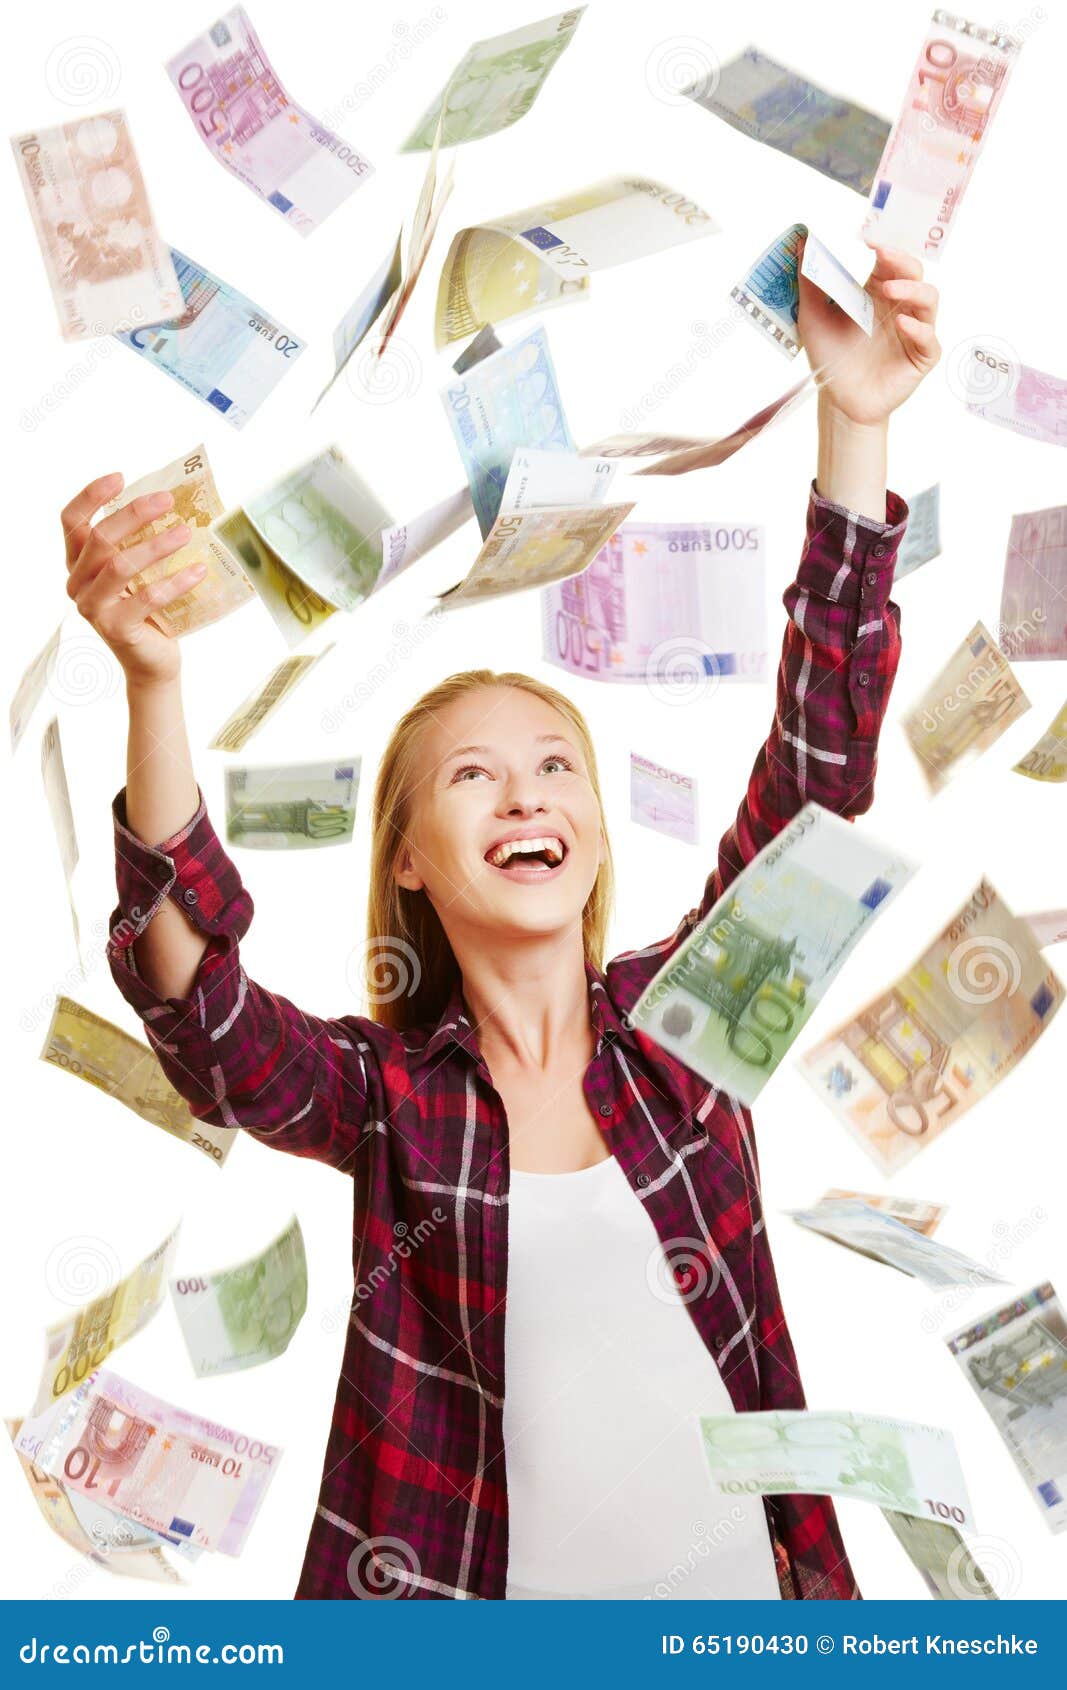 Деньги на счетах жены. Фото маней Рейн. Women catching money. Картинка дождь из евро. Женщина деньги тяжело картинка.